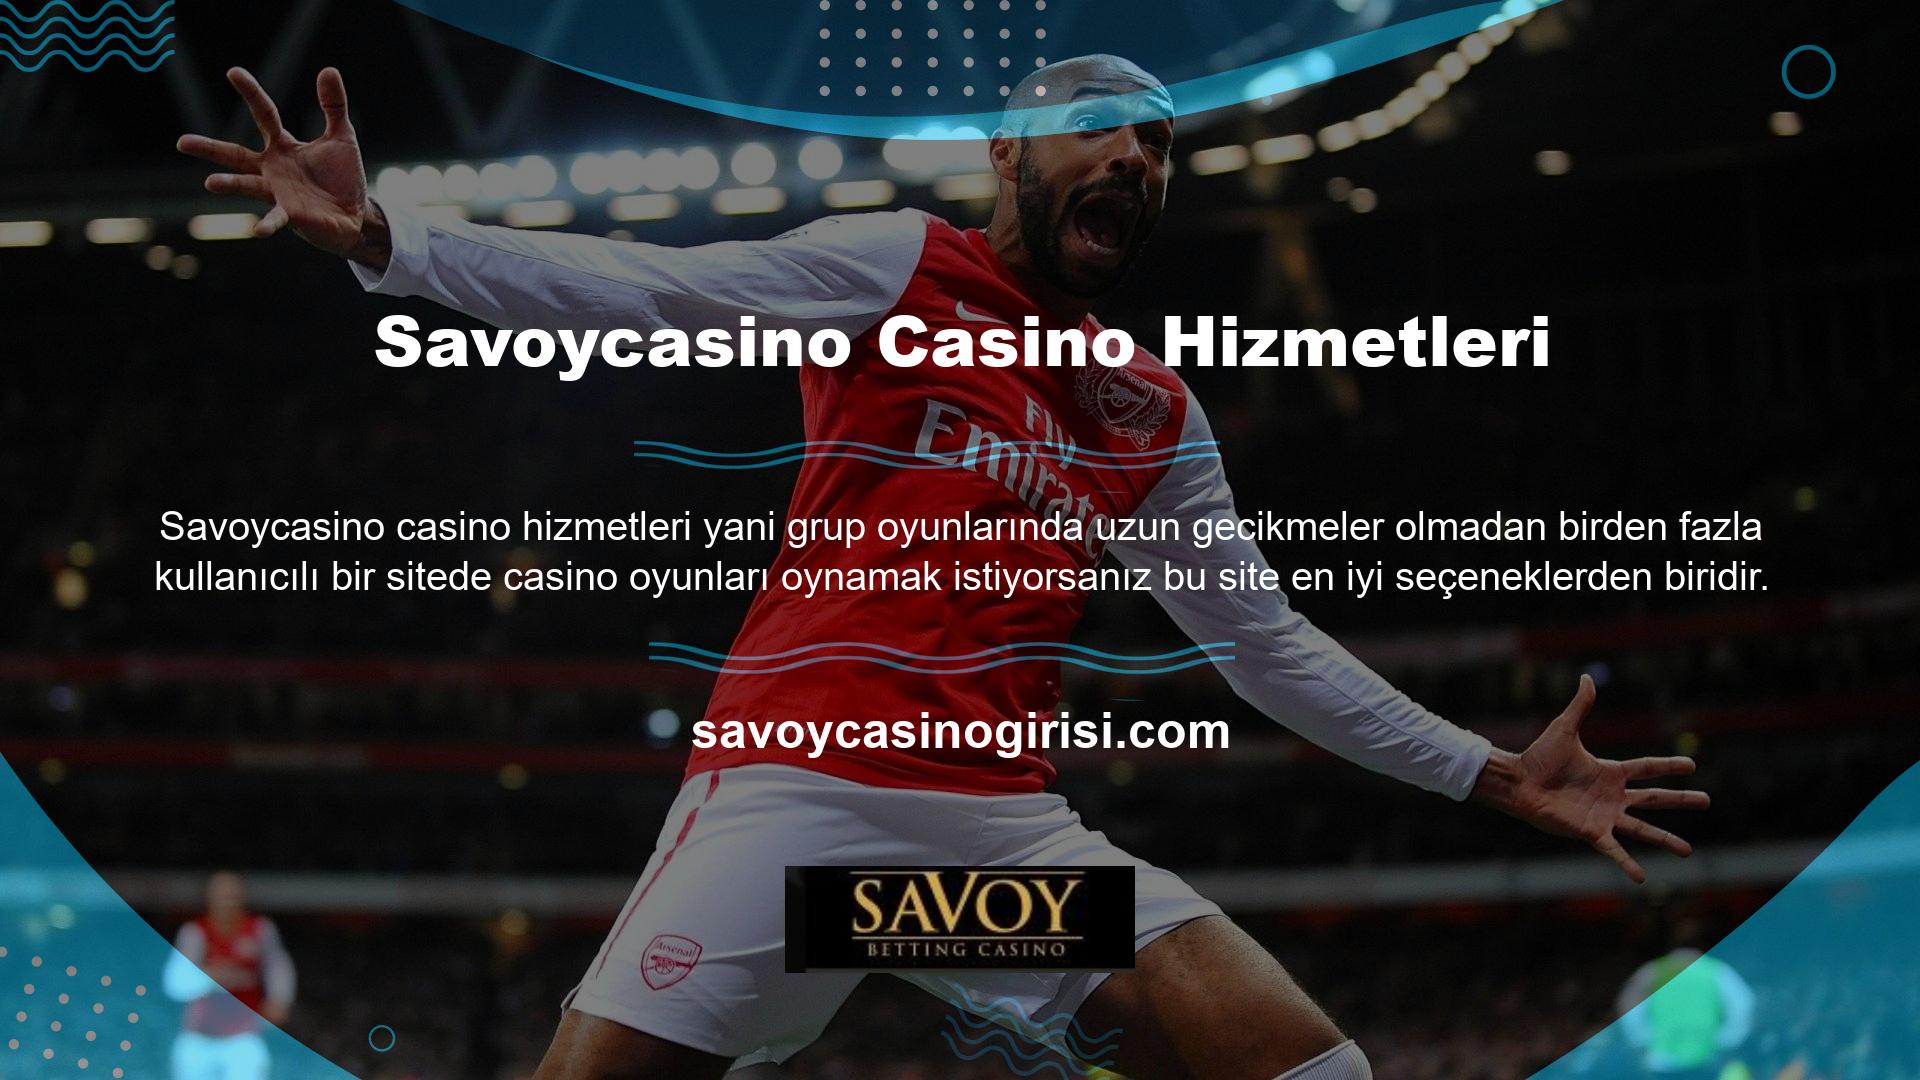 Ayrıca Savoycasino casino hizmetleri sitesi hakkında da bu sitenin kullanıcılara çok çeşitli oyunlar sunduğunu söylemek gerekir, bu yüzden bahis sitesi seçerken site oyunlarının sayısına dikkat ederseniz bu site sizin için oldukça makul bir sitedir